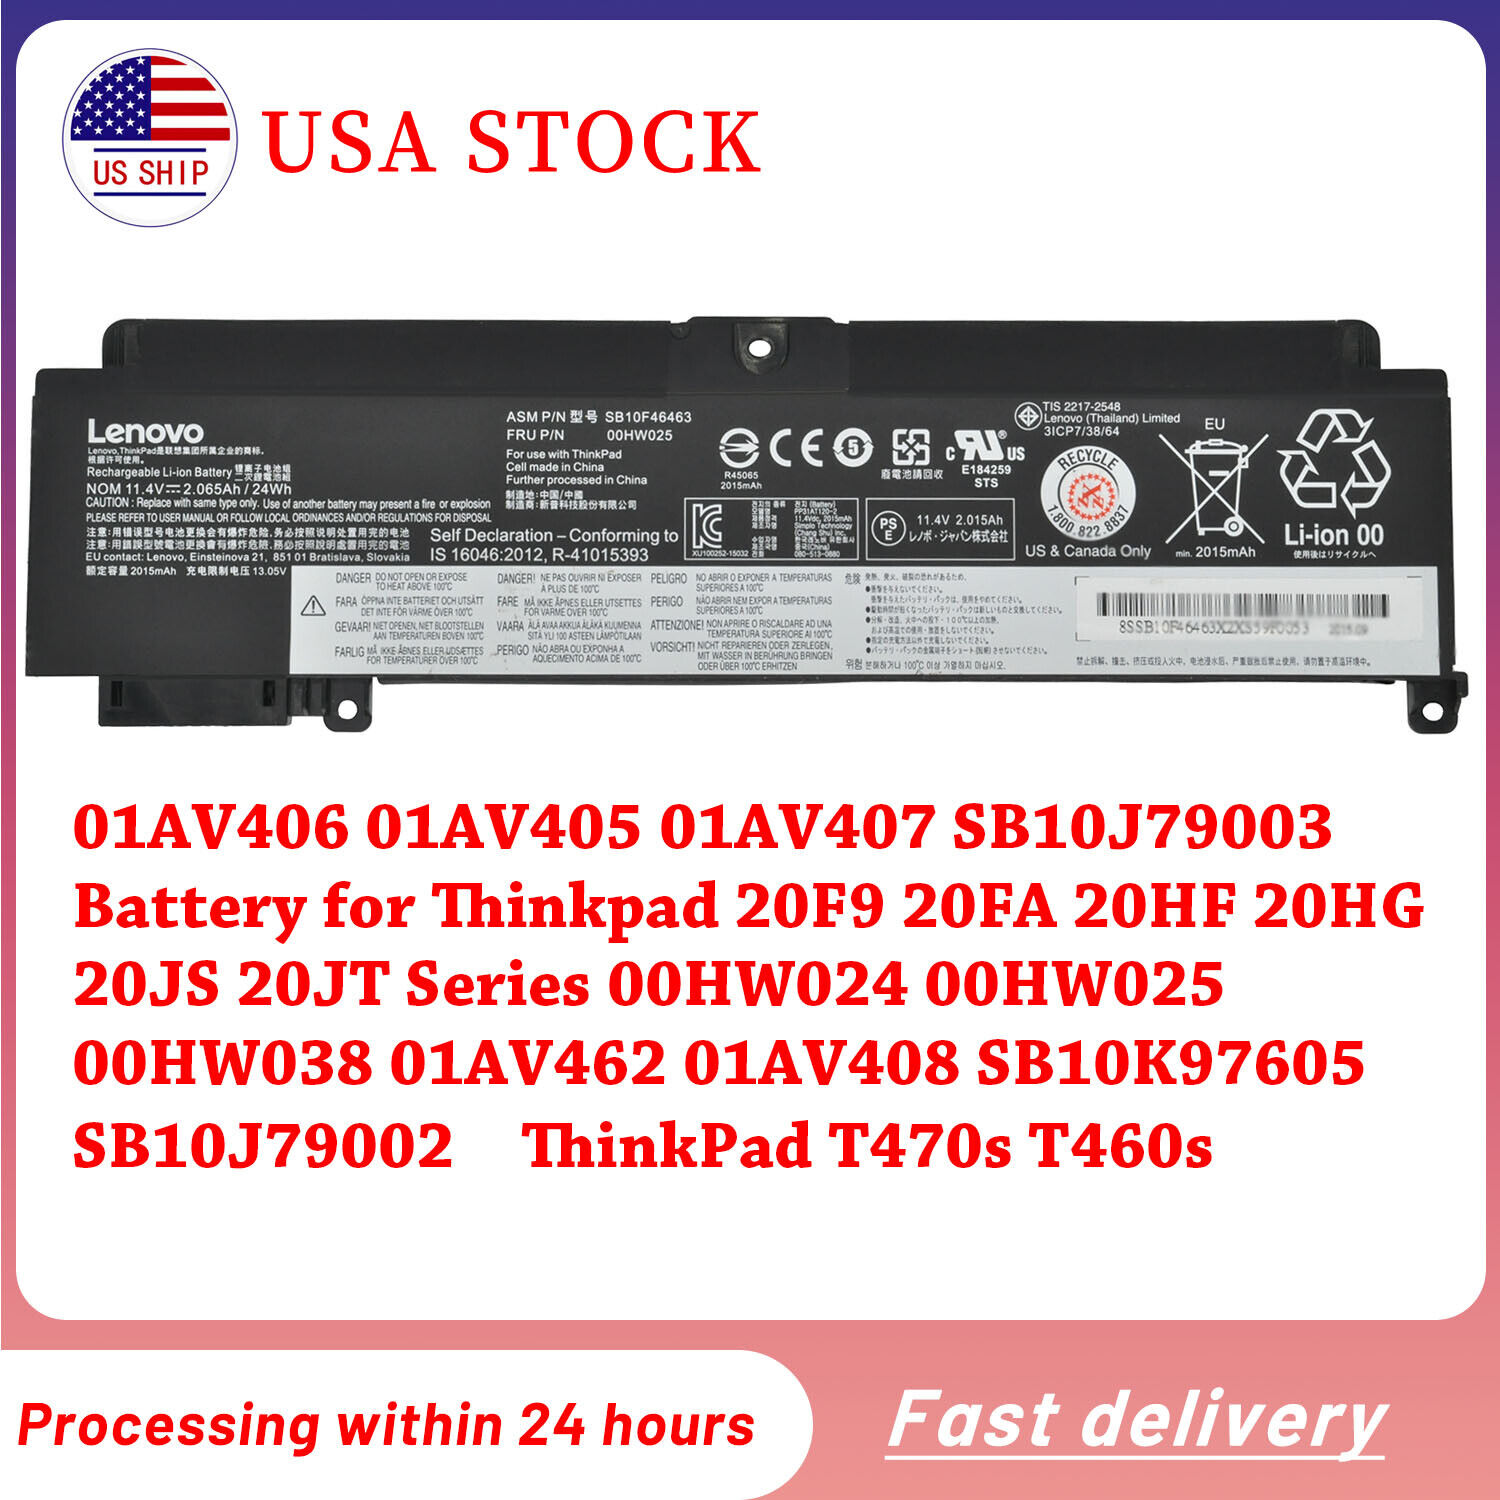 Genuine 00HW024 00HW025 Battery for Lenovo ThinkPad T460s T470s 01AV405 01AV406